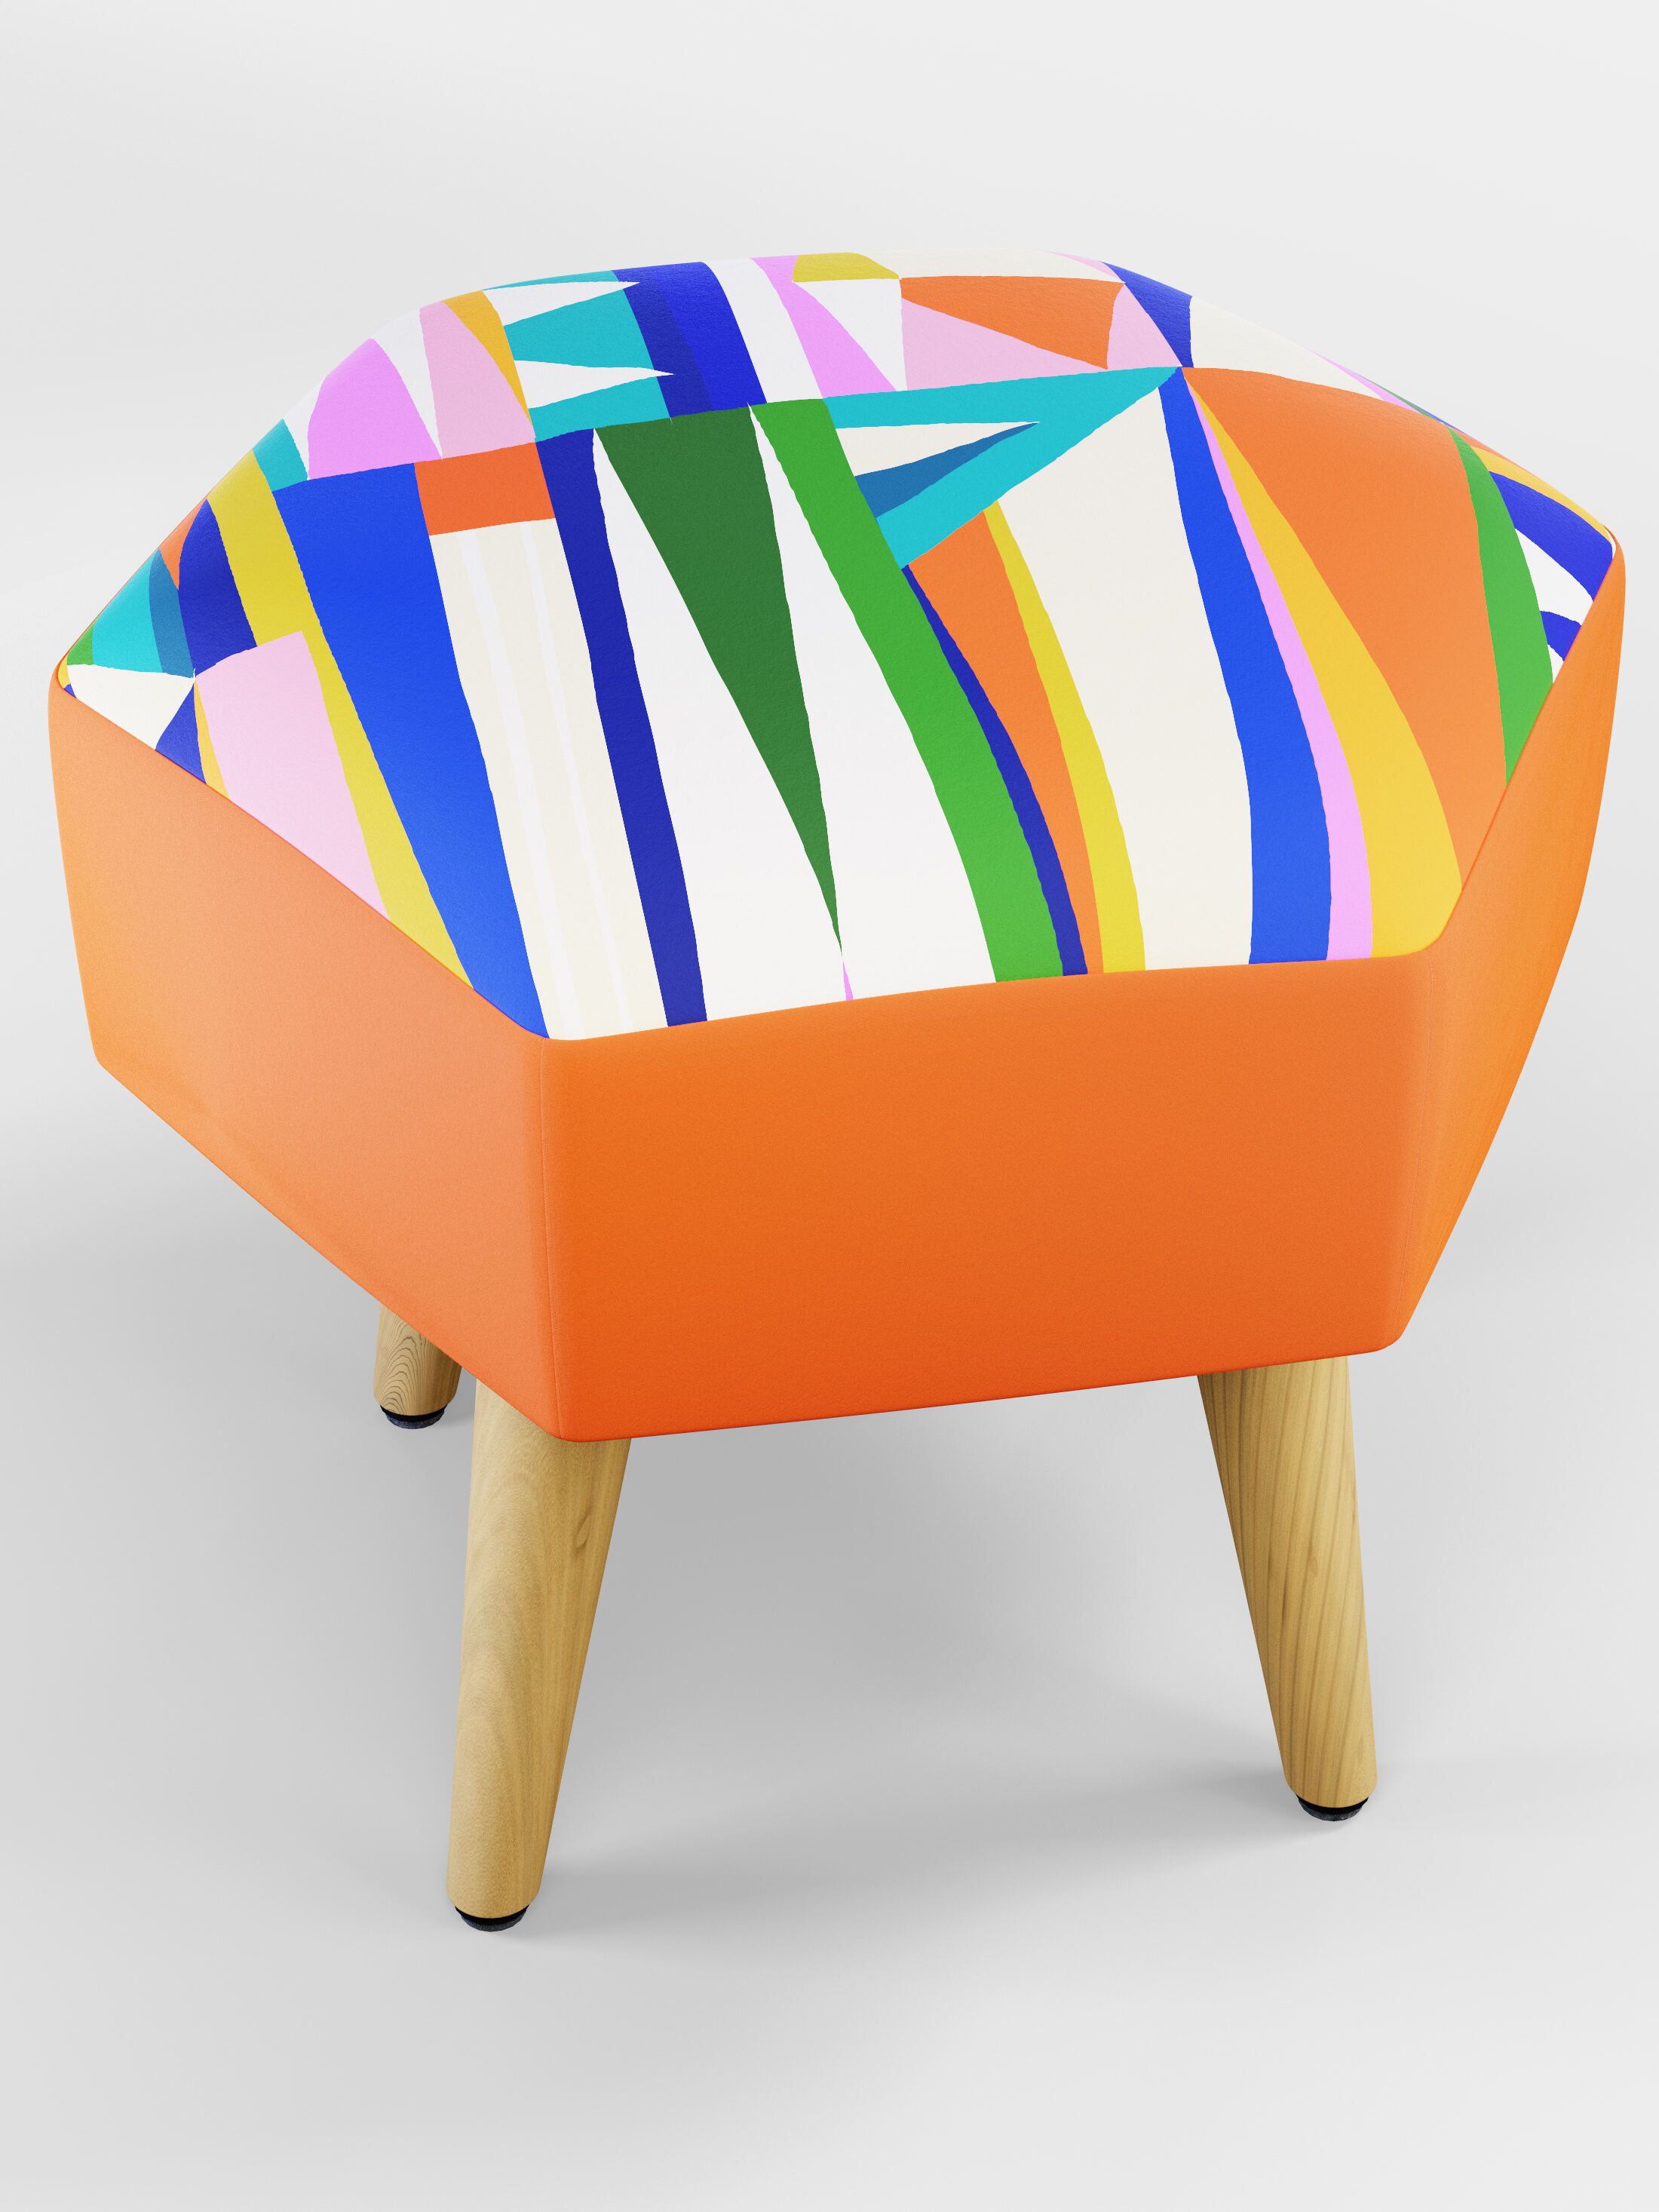 custom printed bespoke ottoman footstool